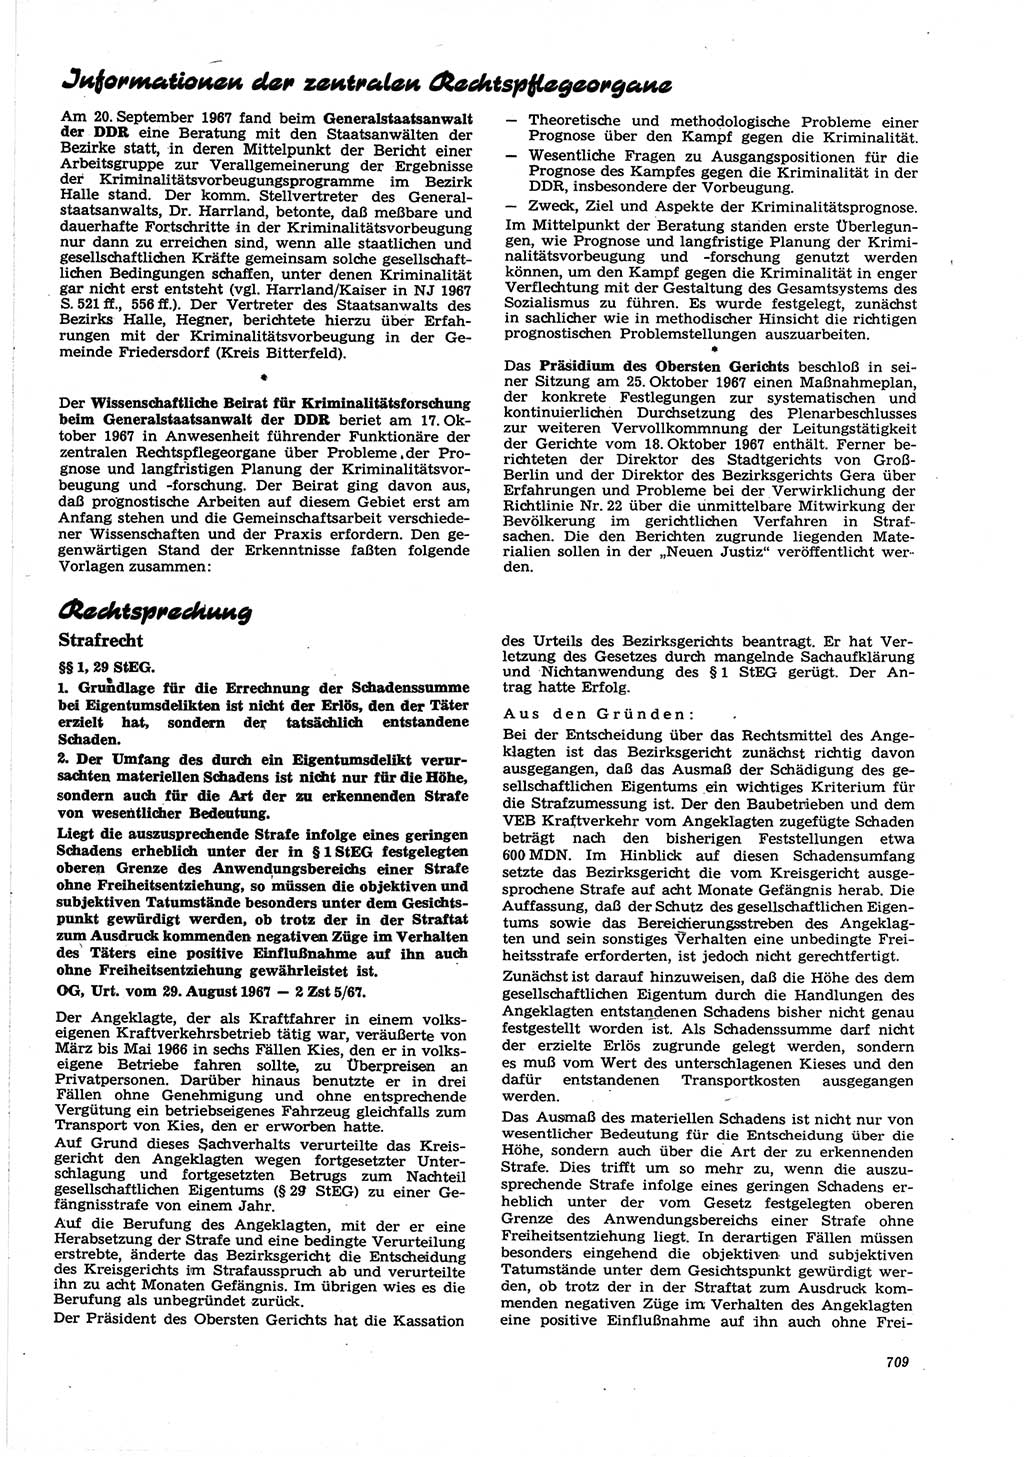 Neue Justiz (NJ), Zeitschrift für Recht und Rechtswissenschaft [Deutsche Demokratische Republik (DDR)], 21. Jahrgang 1967, Seite 709 (NJ DDR 1967, S. 709)